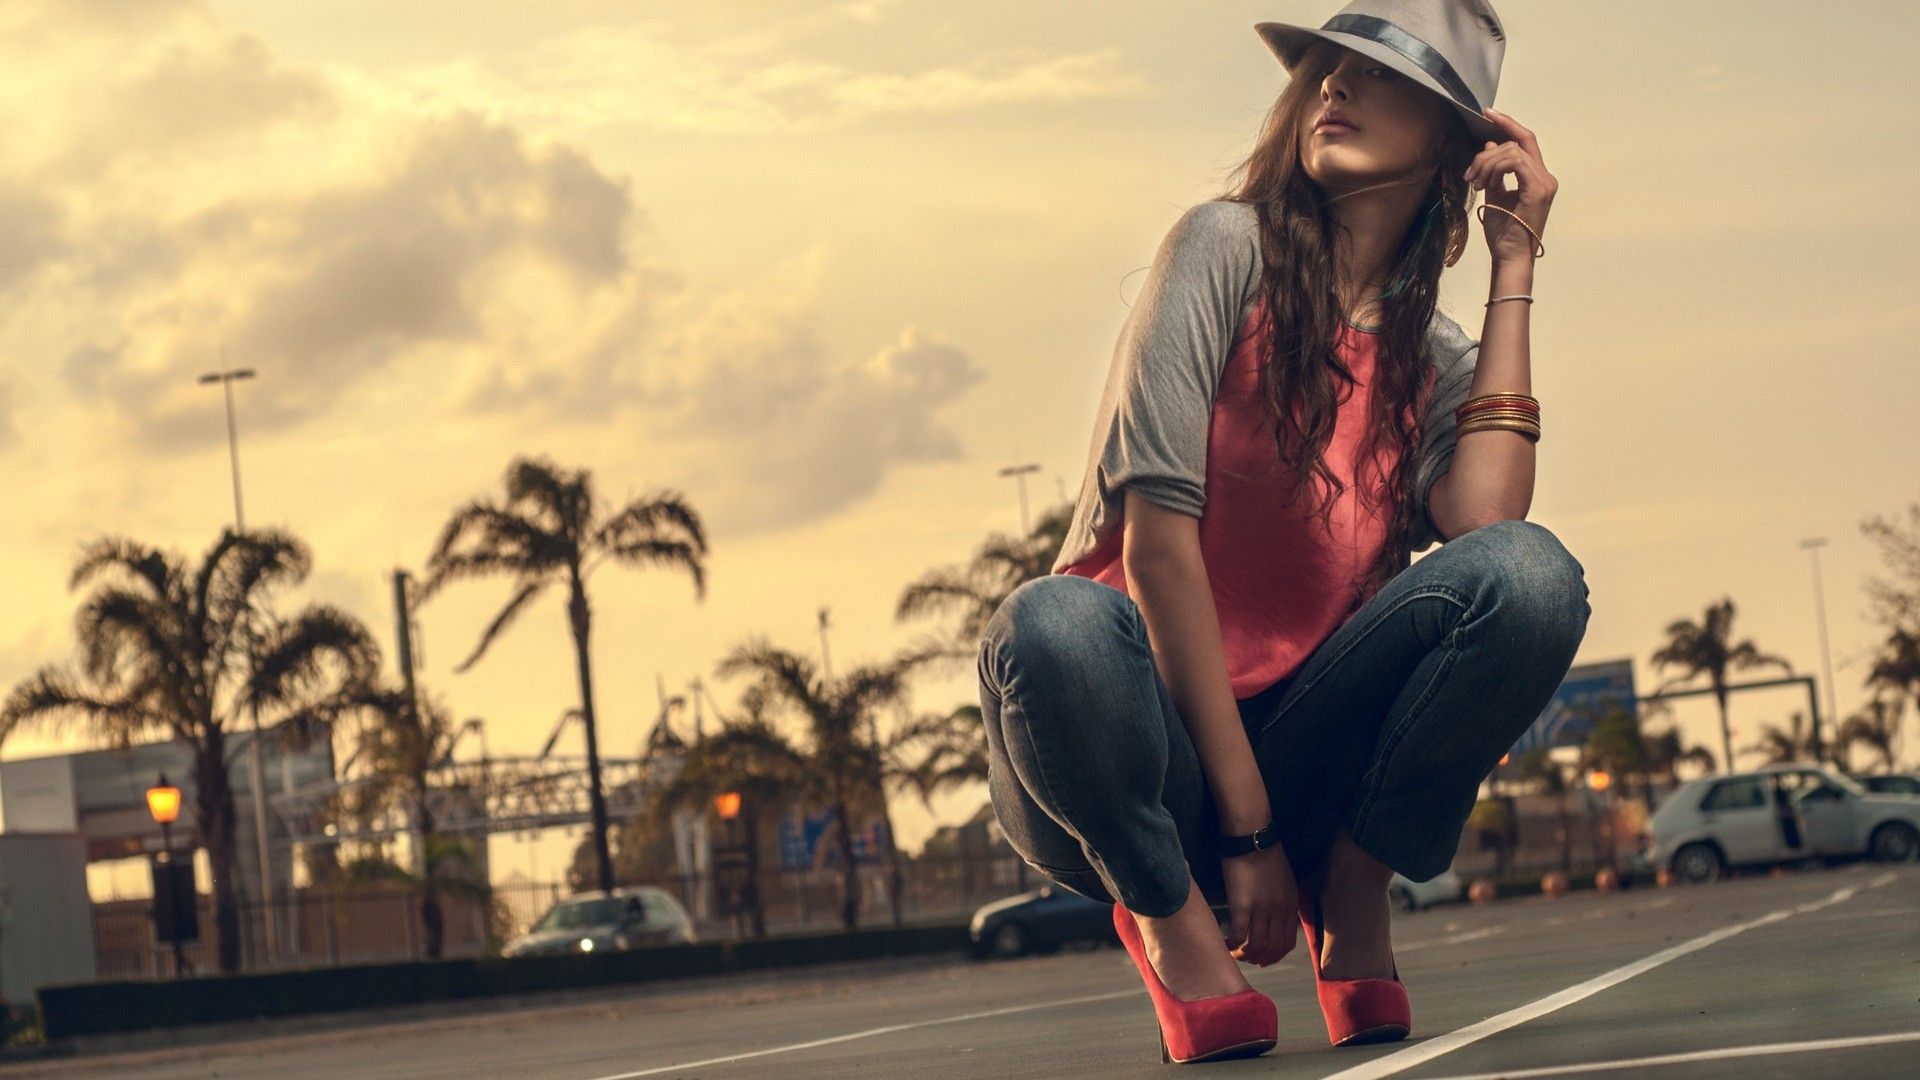 hat, #urban, #bracelets, #high heels, #kneeling, #women, #jeans